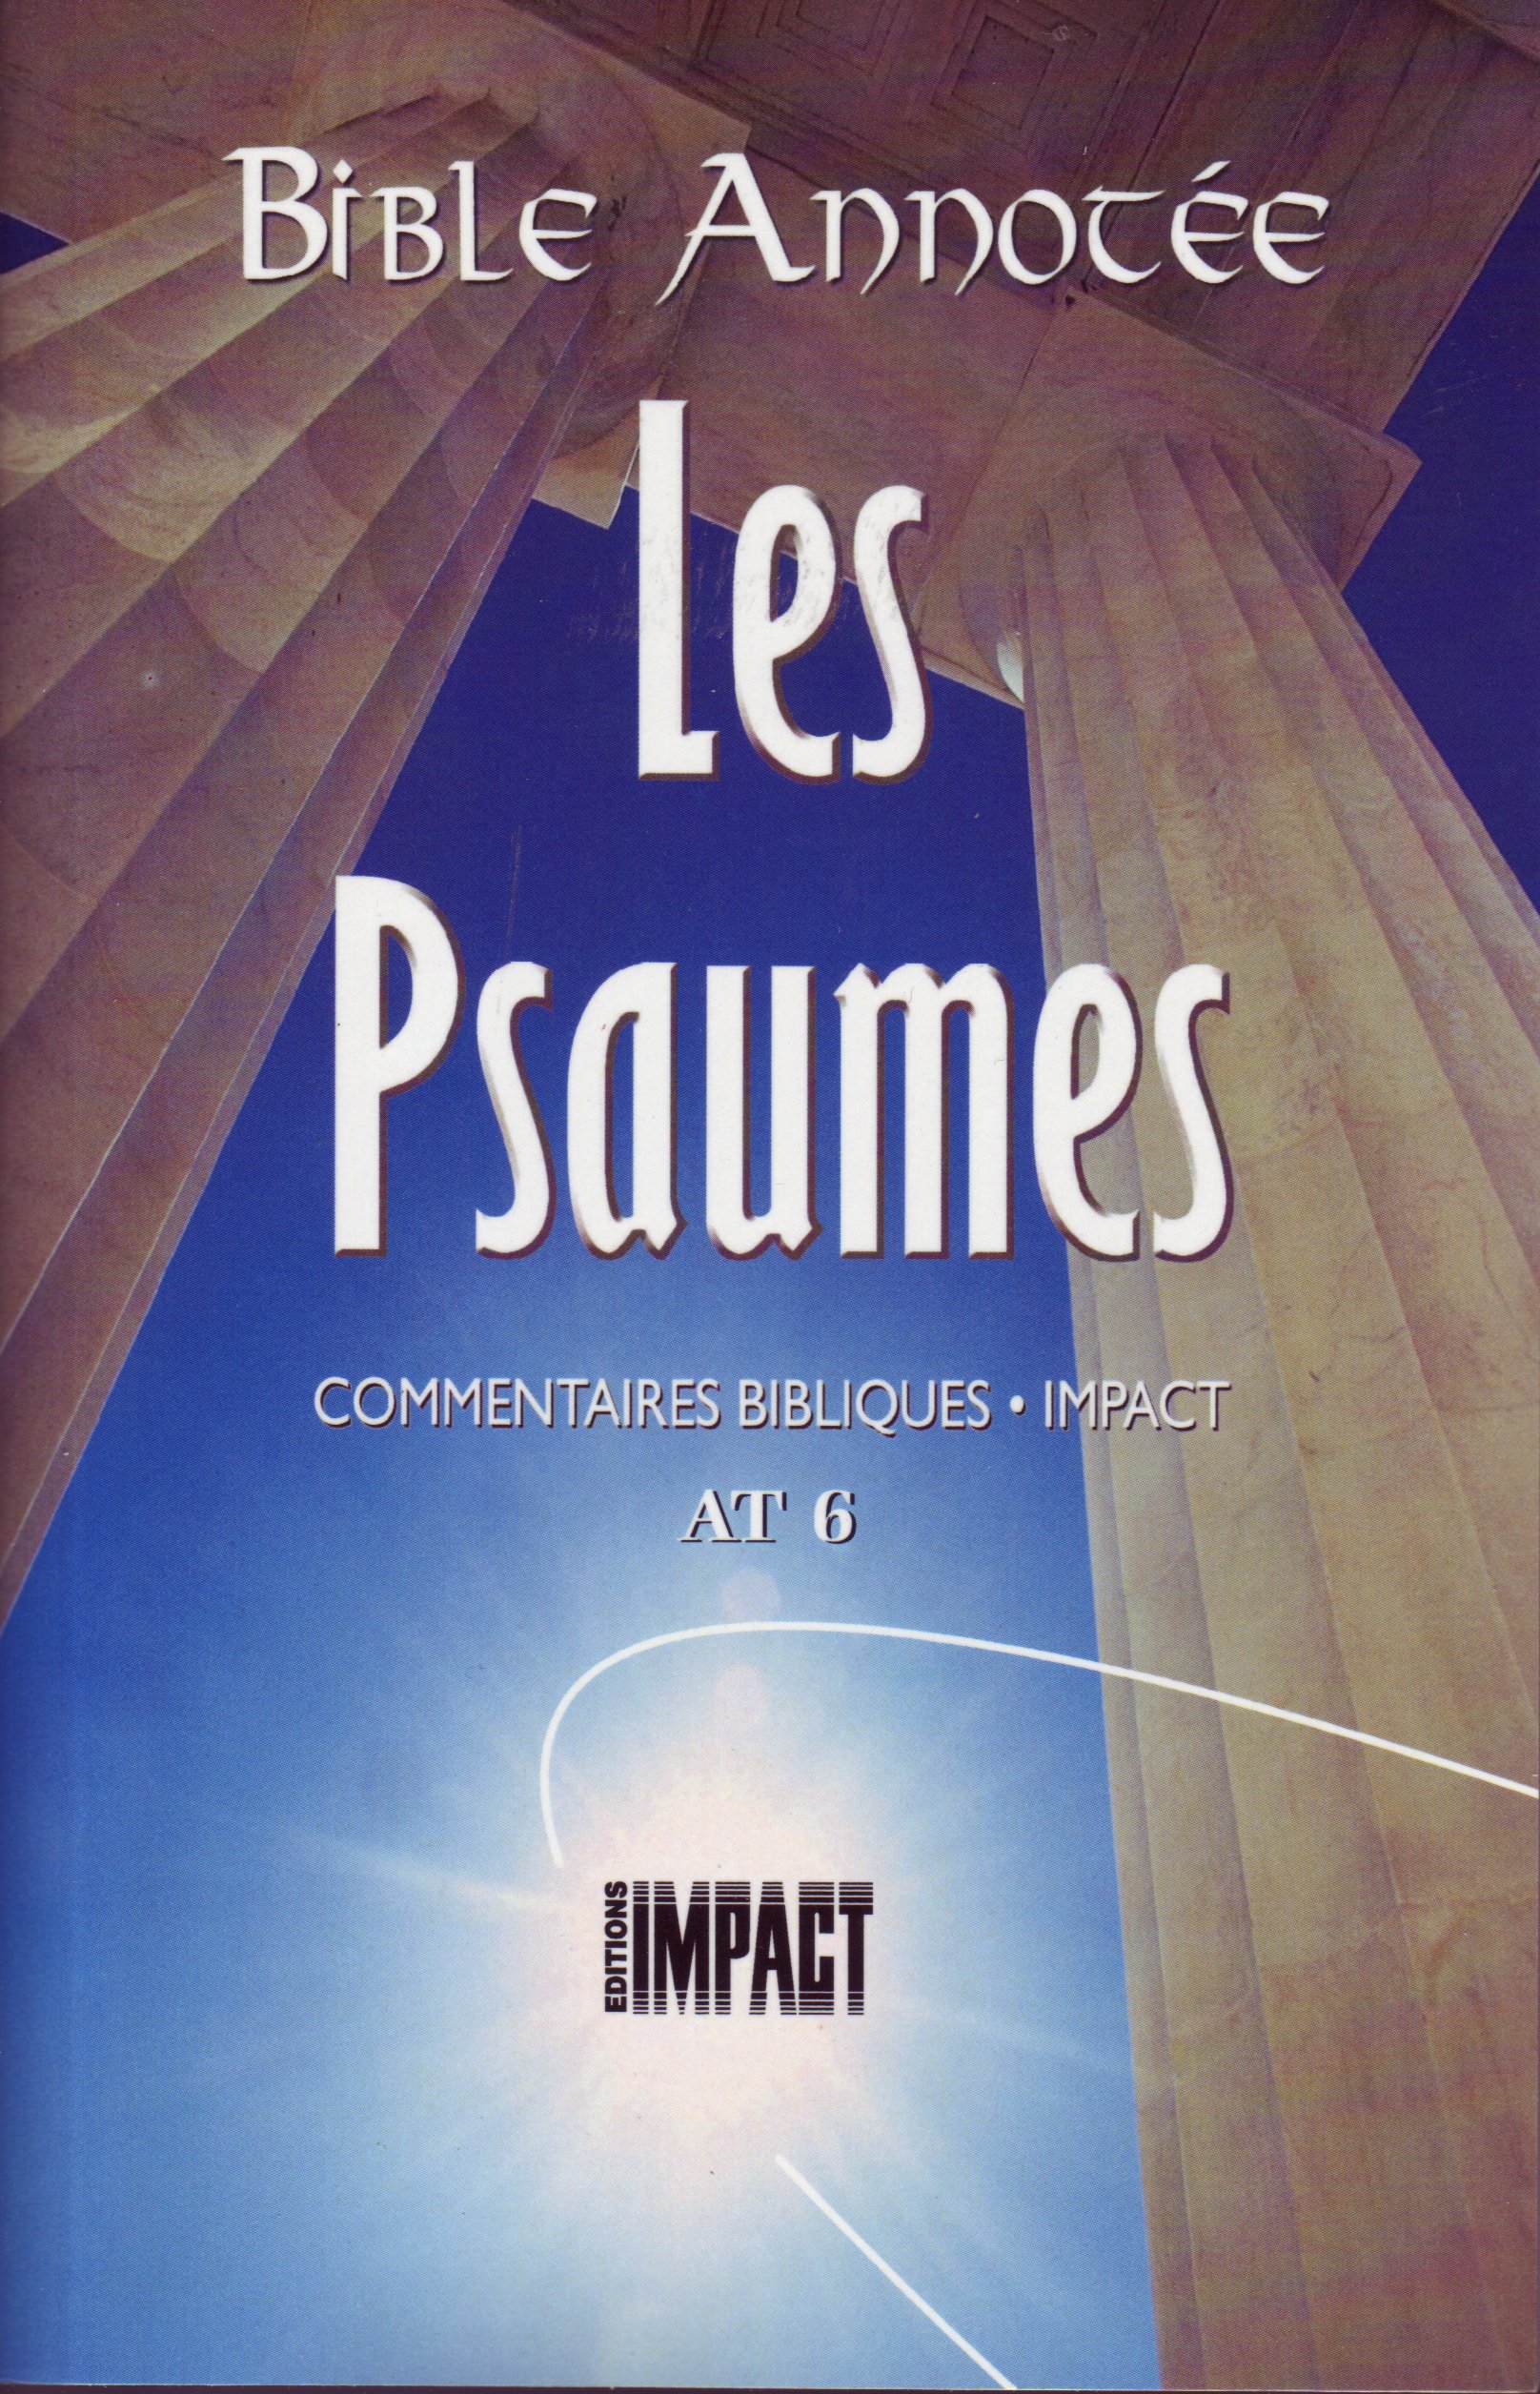 Bible Annotée (La), Les Psaumes - Commentaires bibliques Impact AT 6